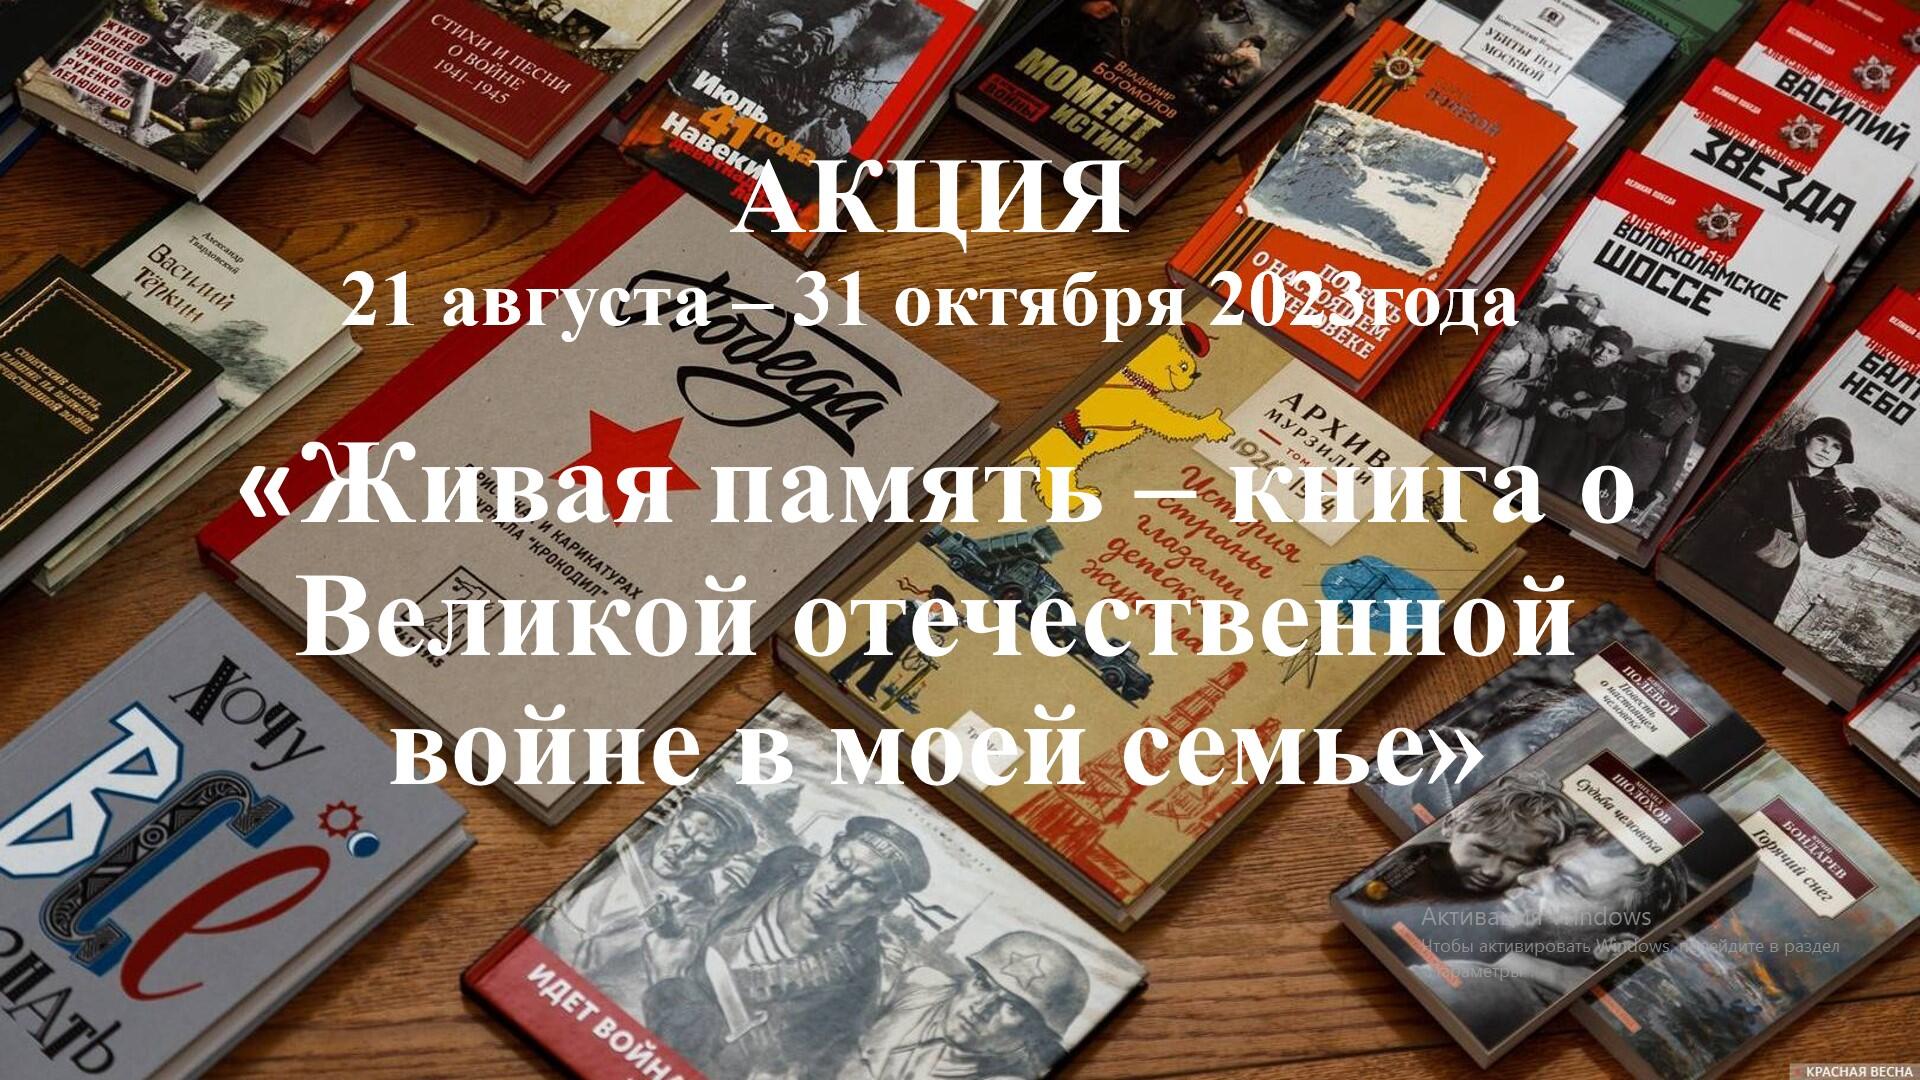 Акция «Живая память – книга о Великой Отечественной войне в моей семье».